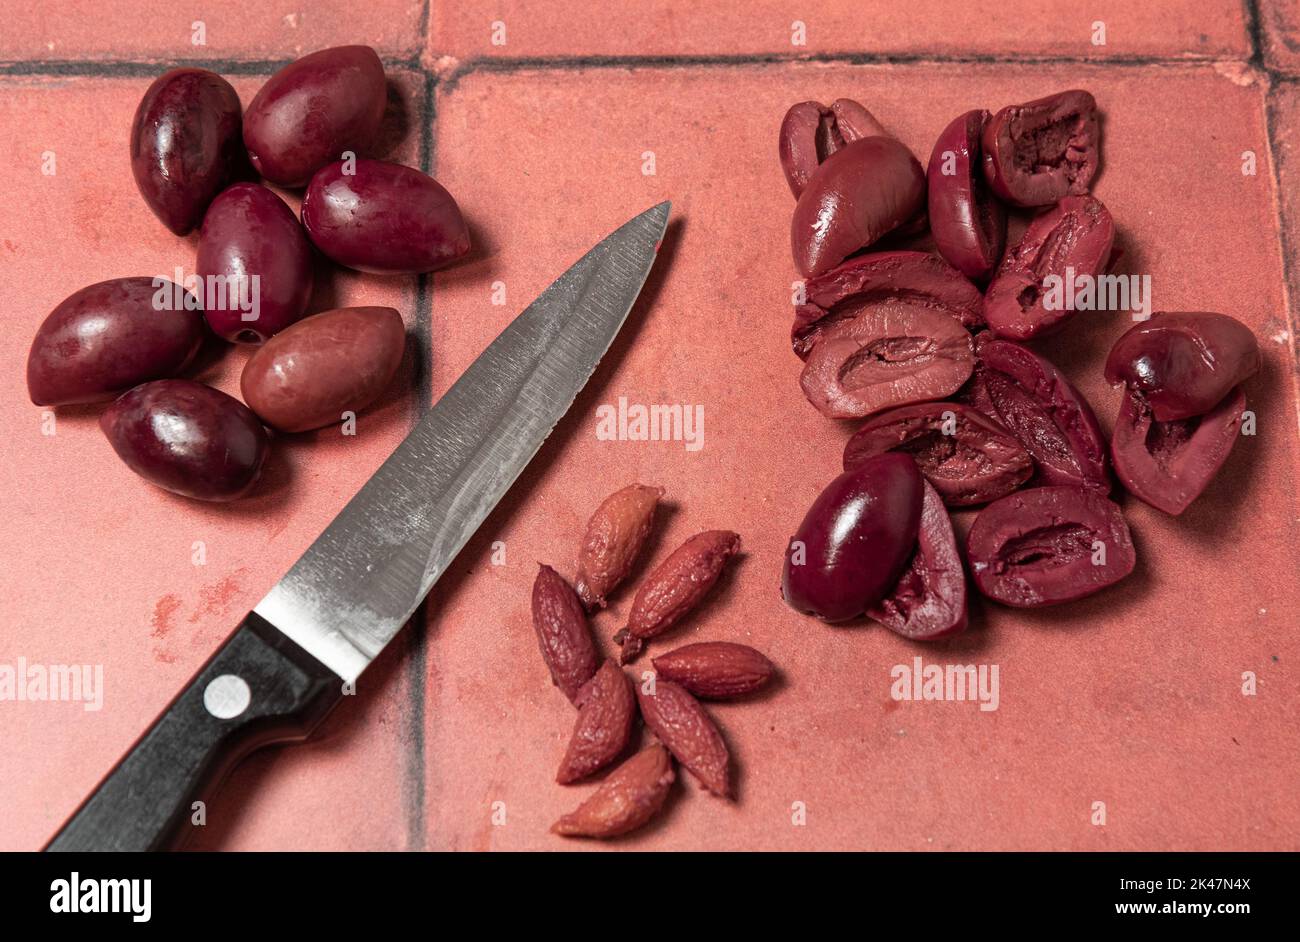 Kalamata olives with knife Stock Photo